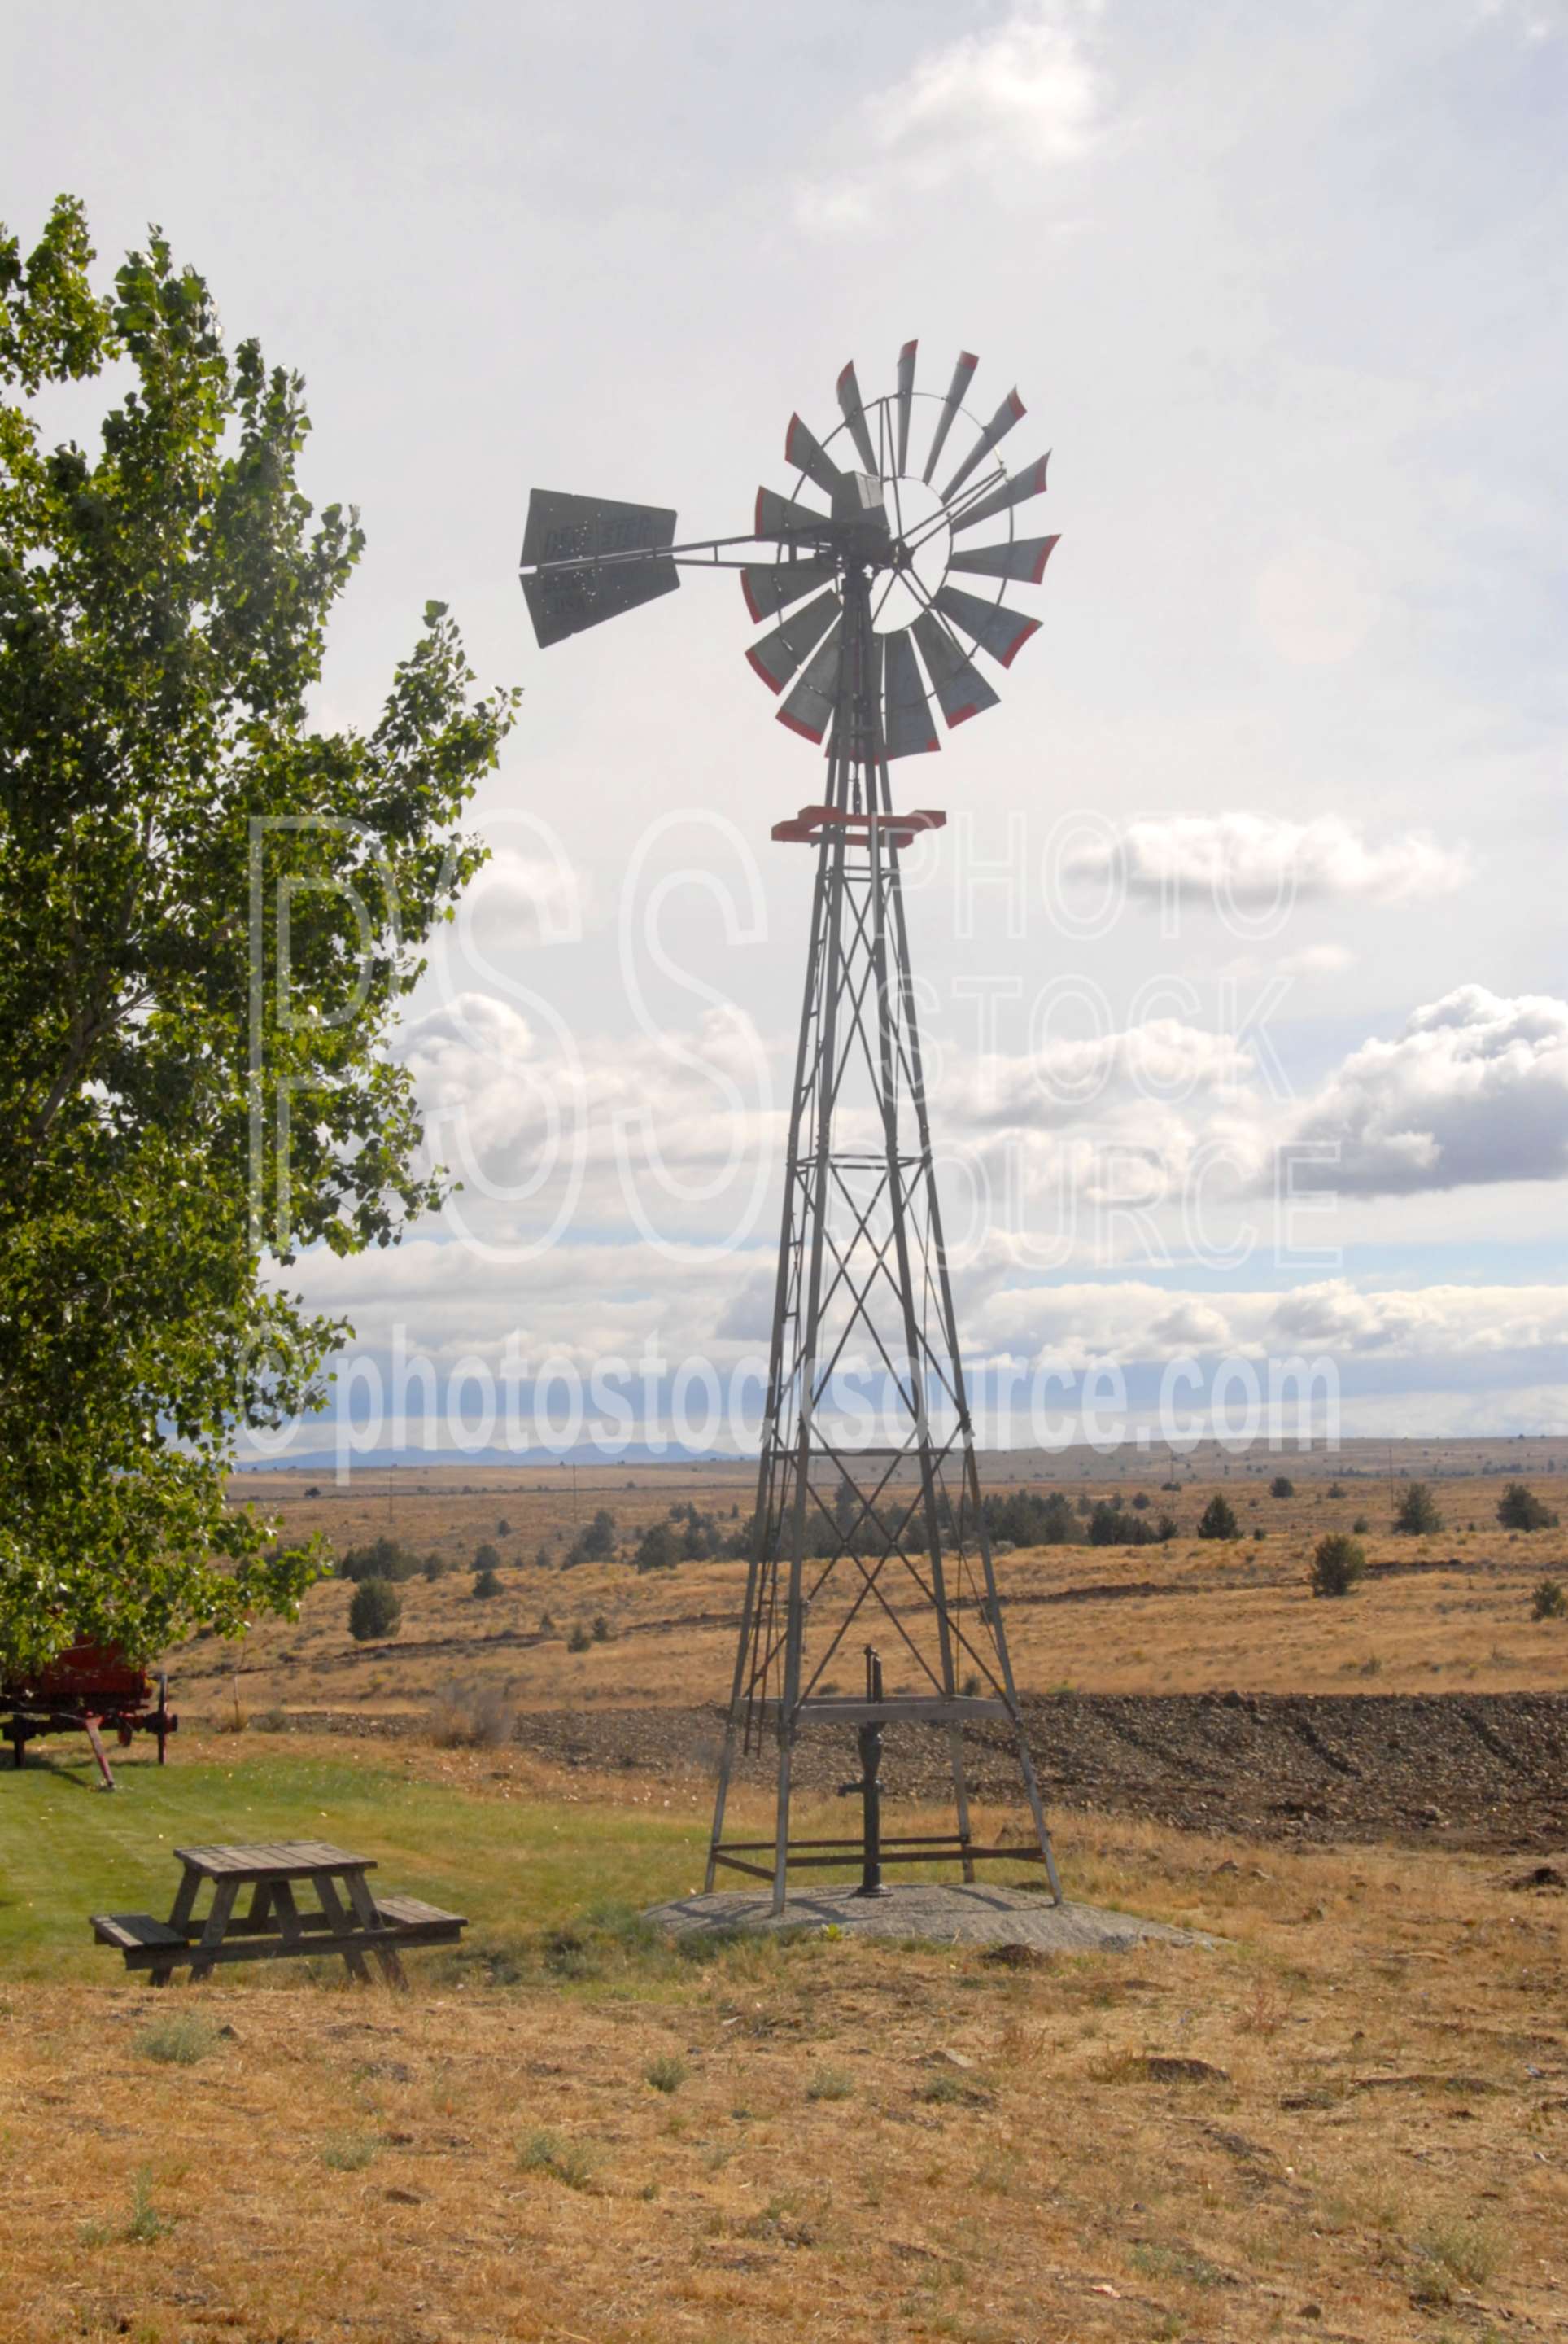 Windmill,antique,pump,water,farm,ranch,windmill